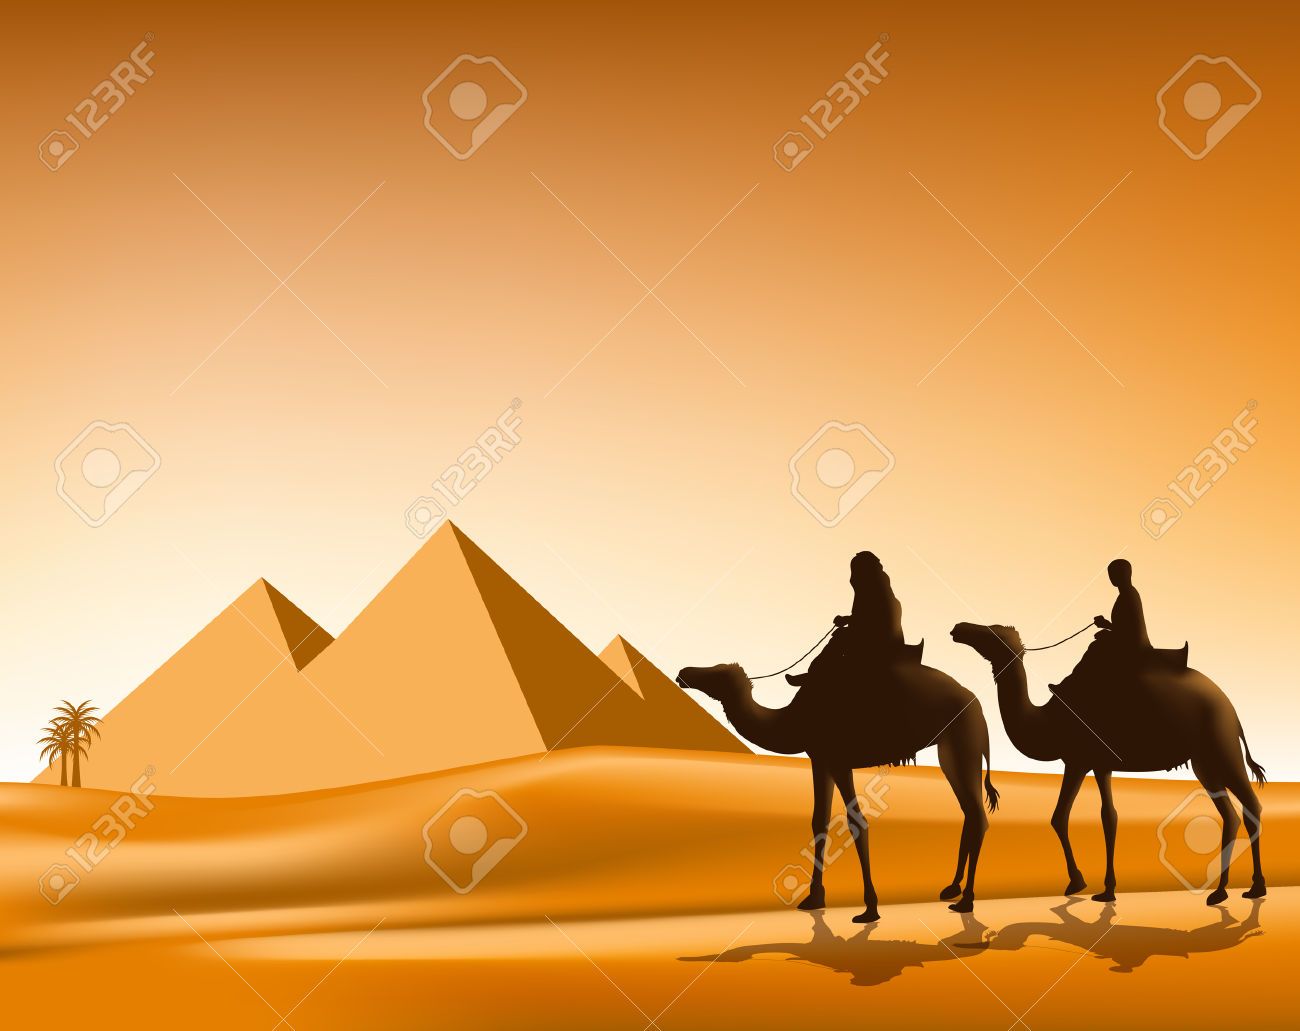 Desert clipart desert caravan. Stock vector egypt camels